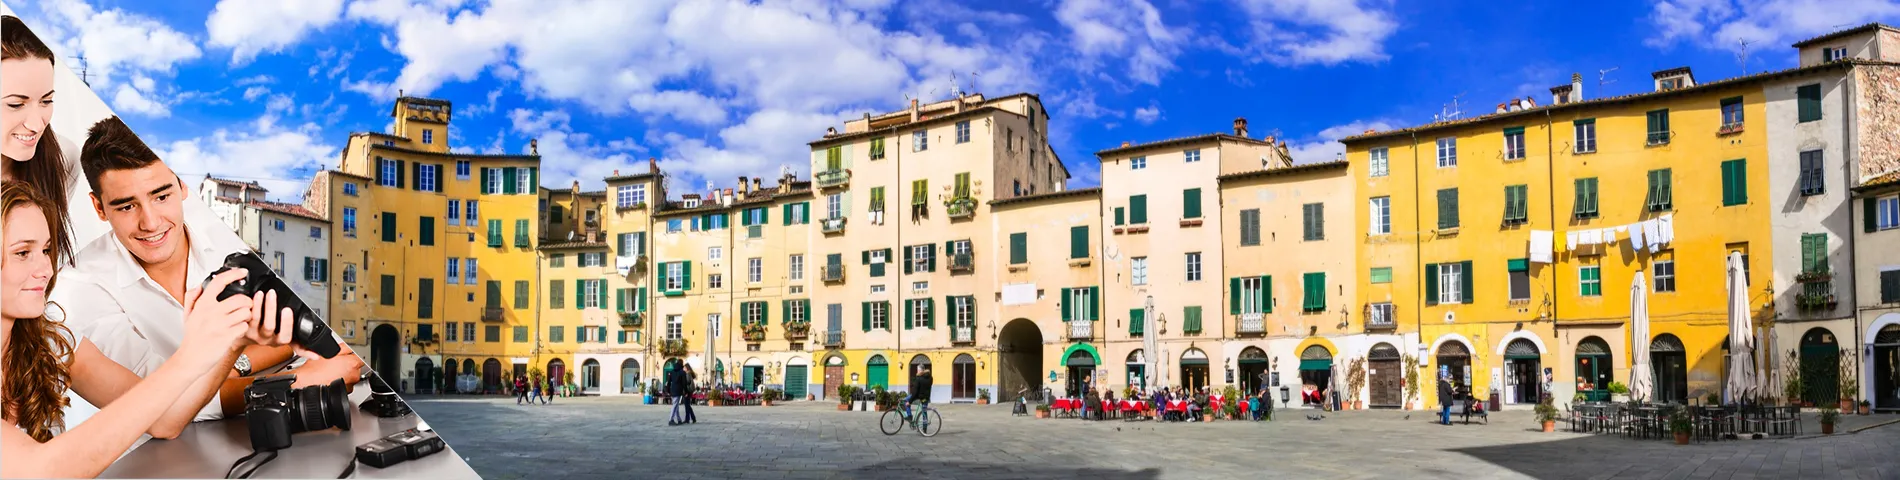 Lucca - Italiano & Fotografia